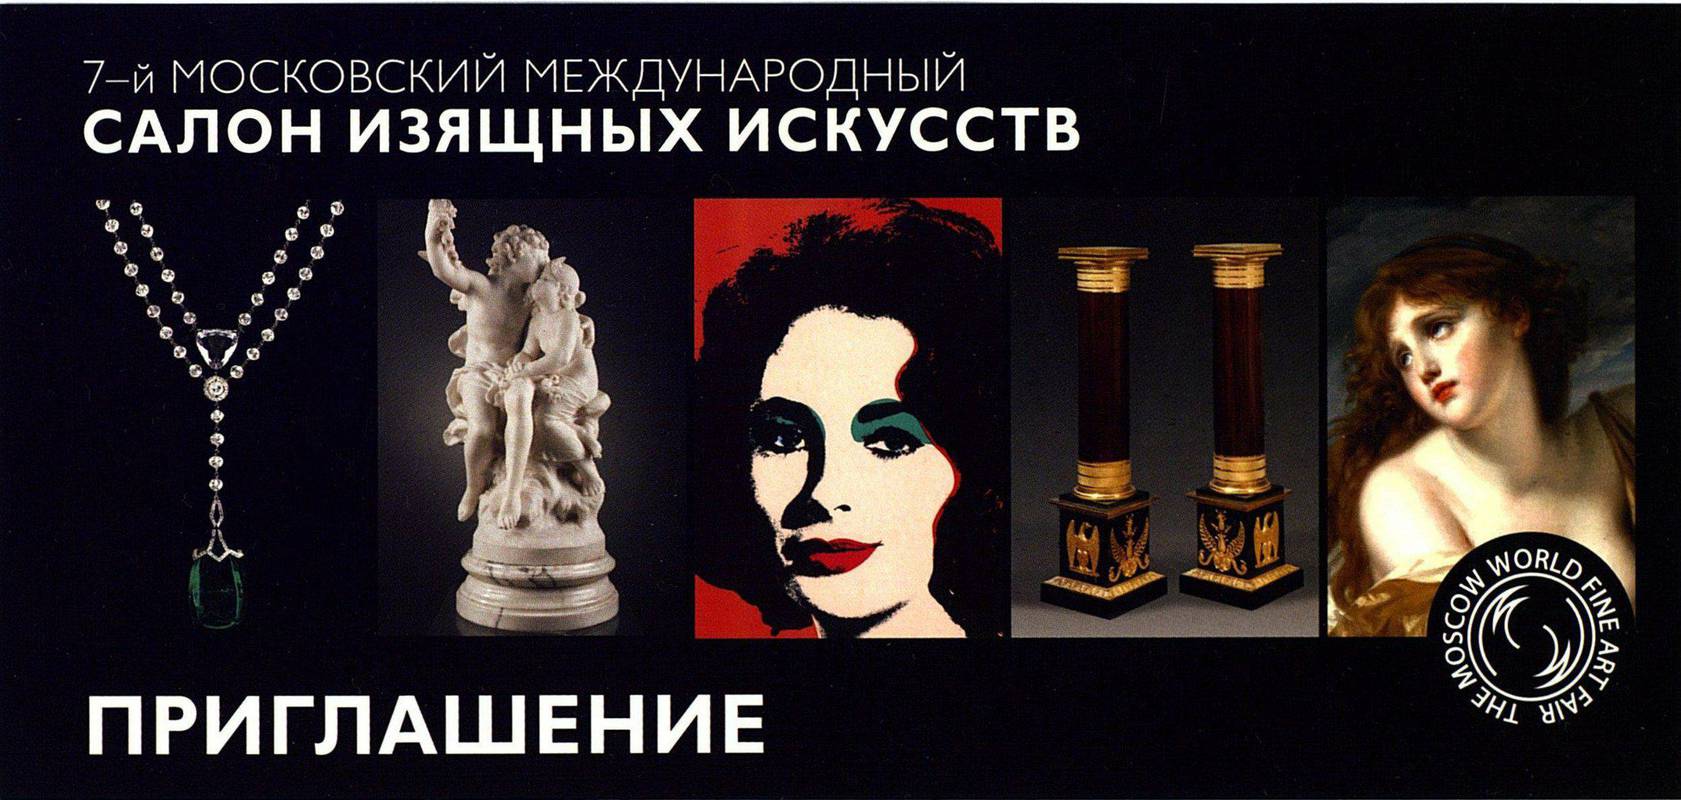 7‑й Московский международный салон изящных искусств 2013